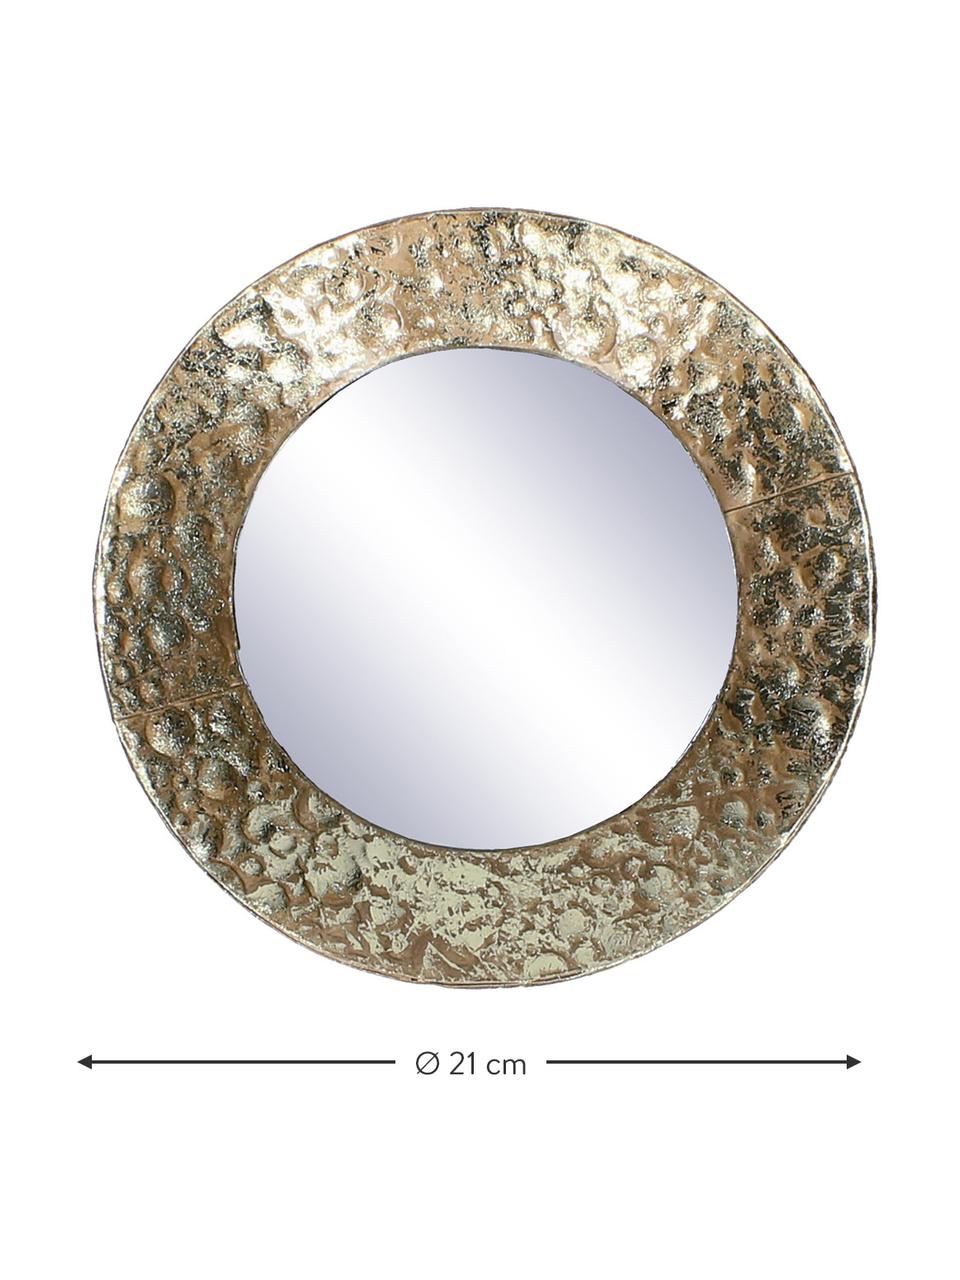 Runder Wandspiegel Fridy mit messingfarbenem Metallrahmen, Rahmen: Metall, beschichtet, Spiegelfläche: Spiegelglas, Messingfarben, Ø 21 x T 4 cm